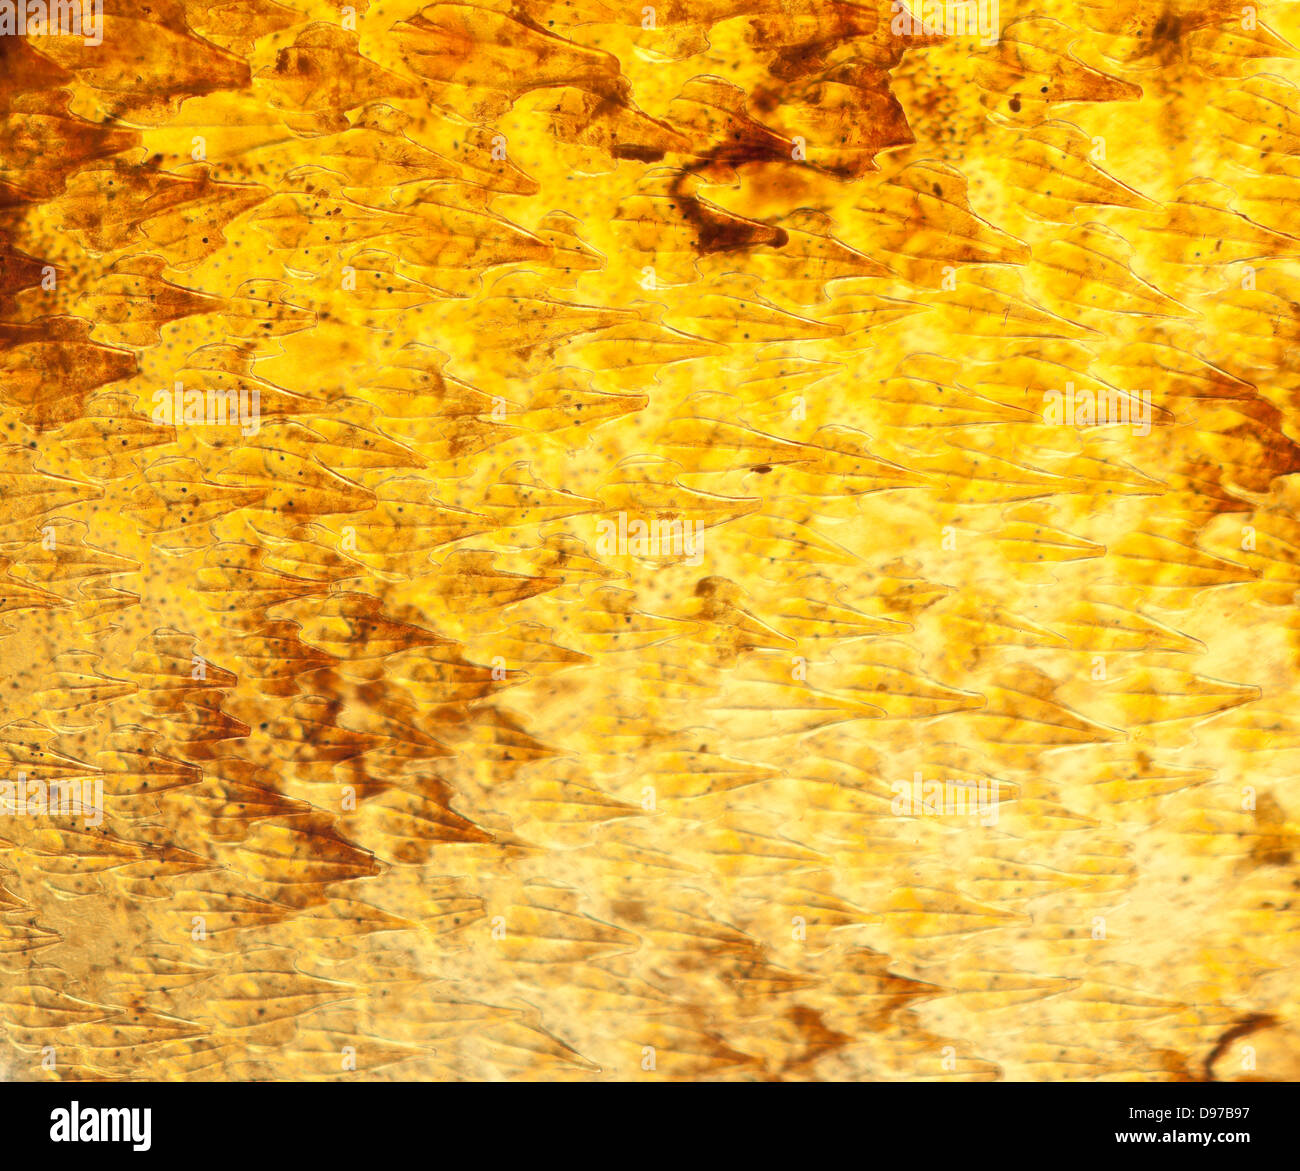 L'aiguillat, Squalus acanthias. Macro close-up de la peau, lumière transmise Banque D'Images